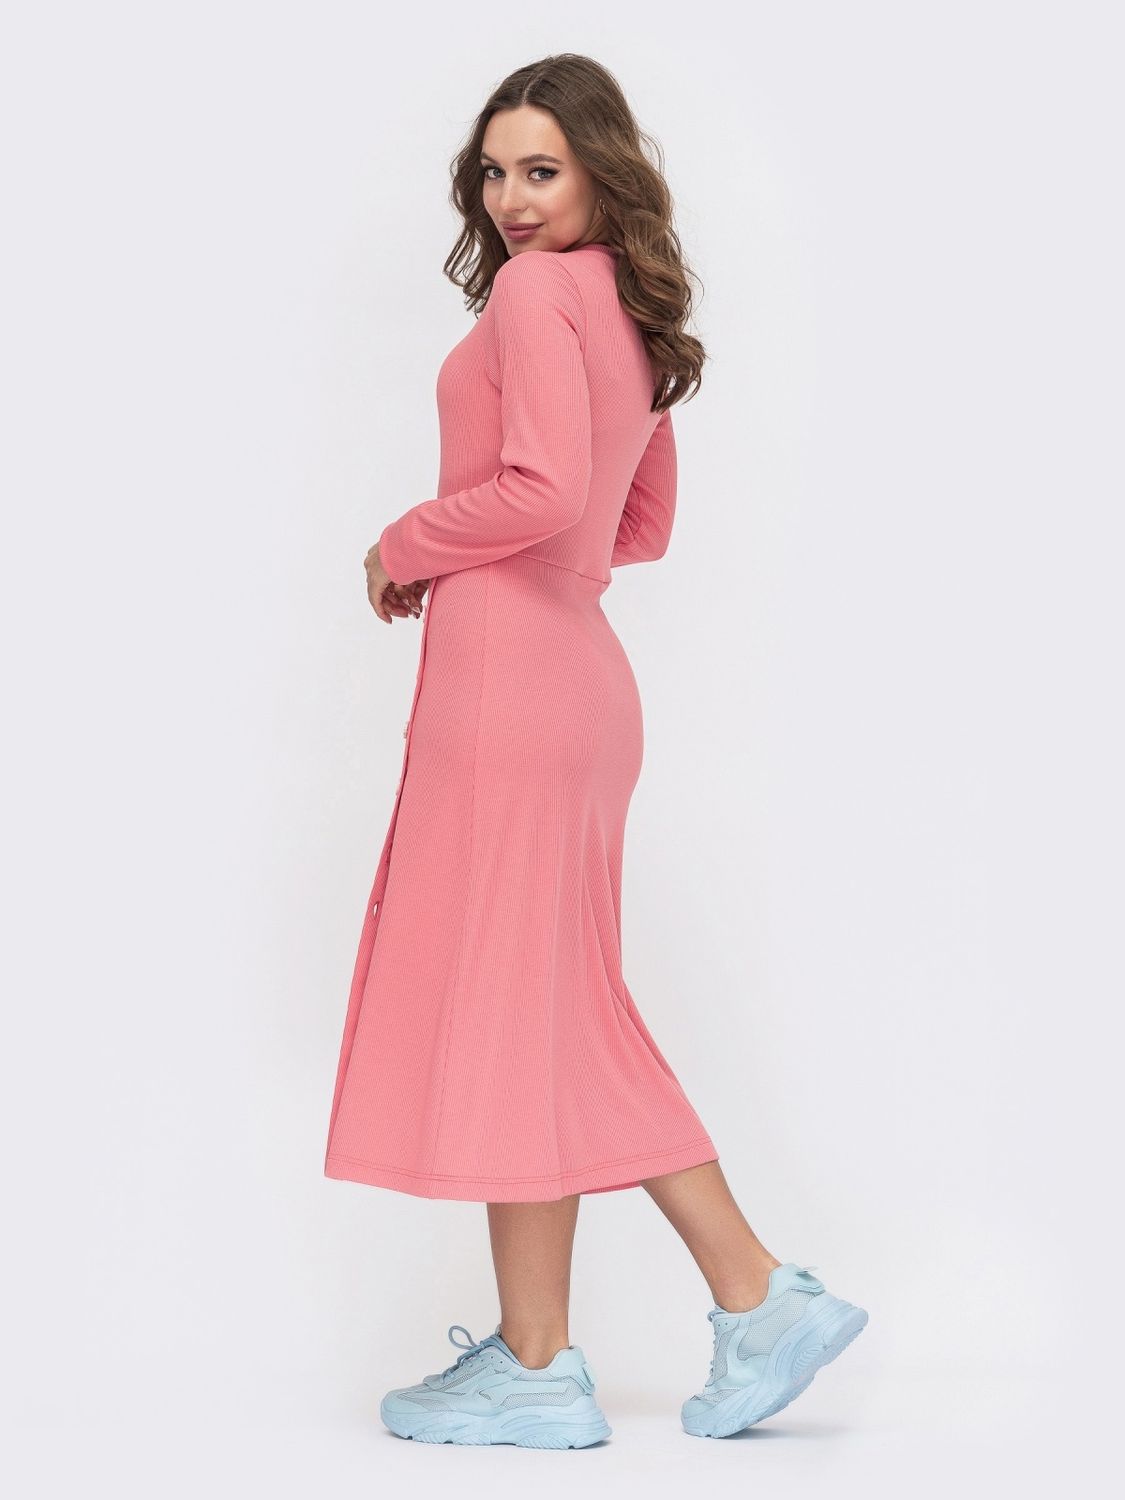 Осіннє плаття із фактурного трикотажу рожеве - фото